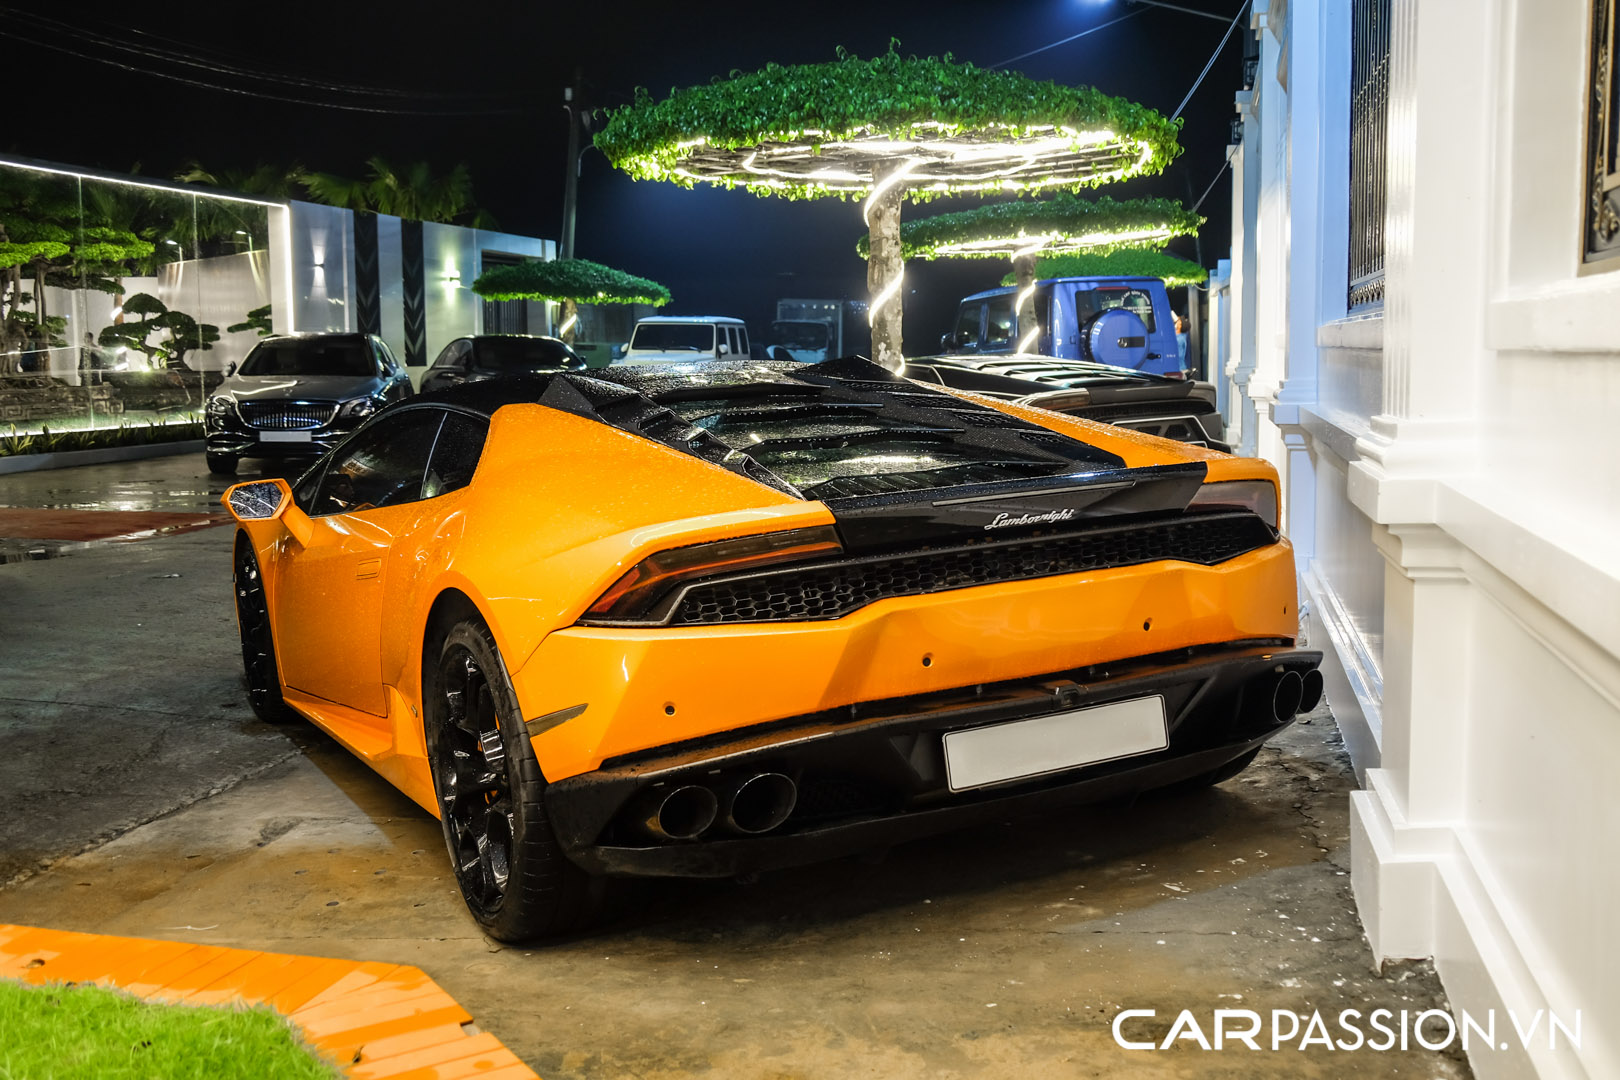 CP-Bộ đôi Lamborghini Huracan độ độc đáo15.jpg